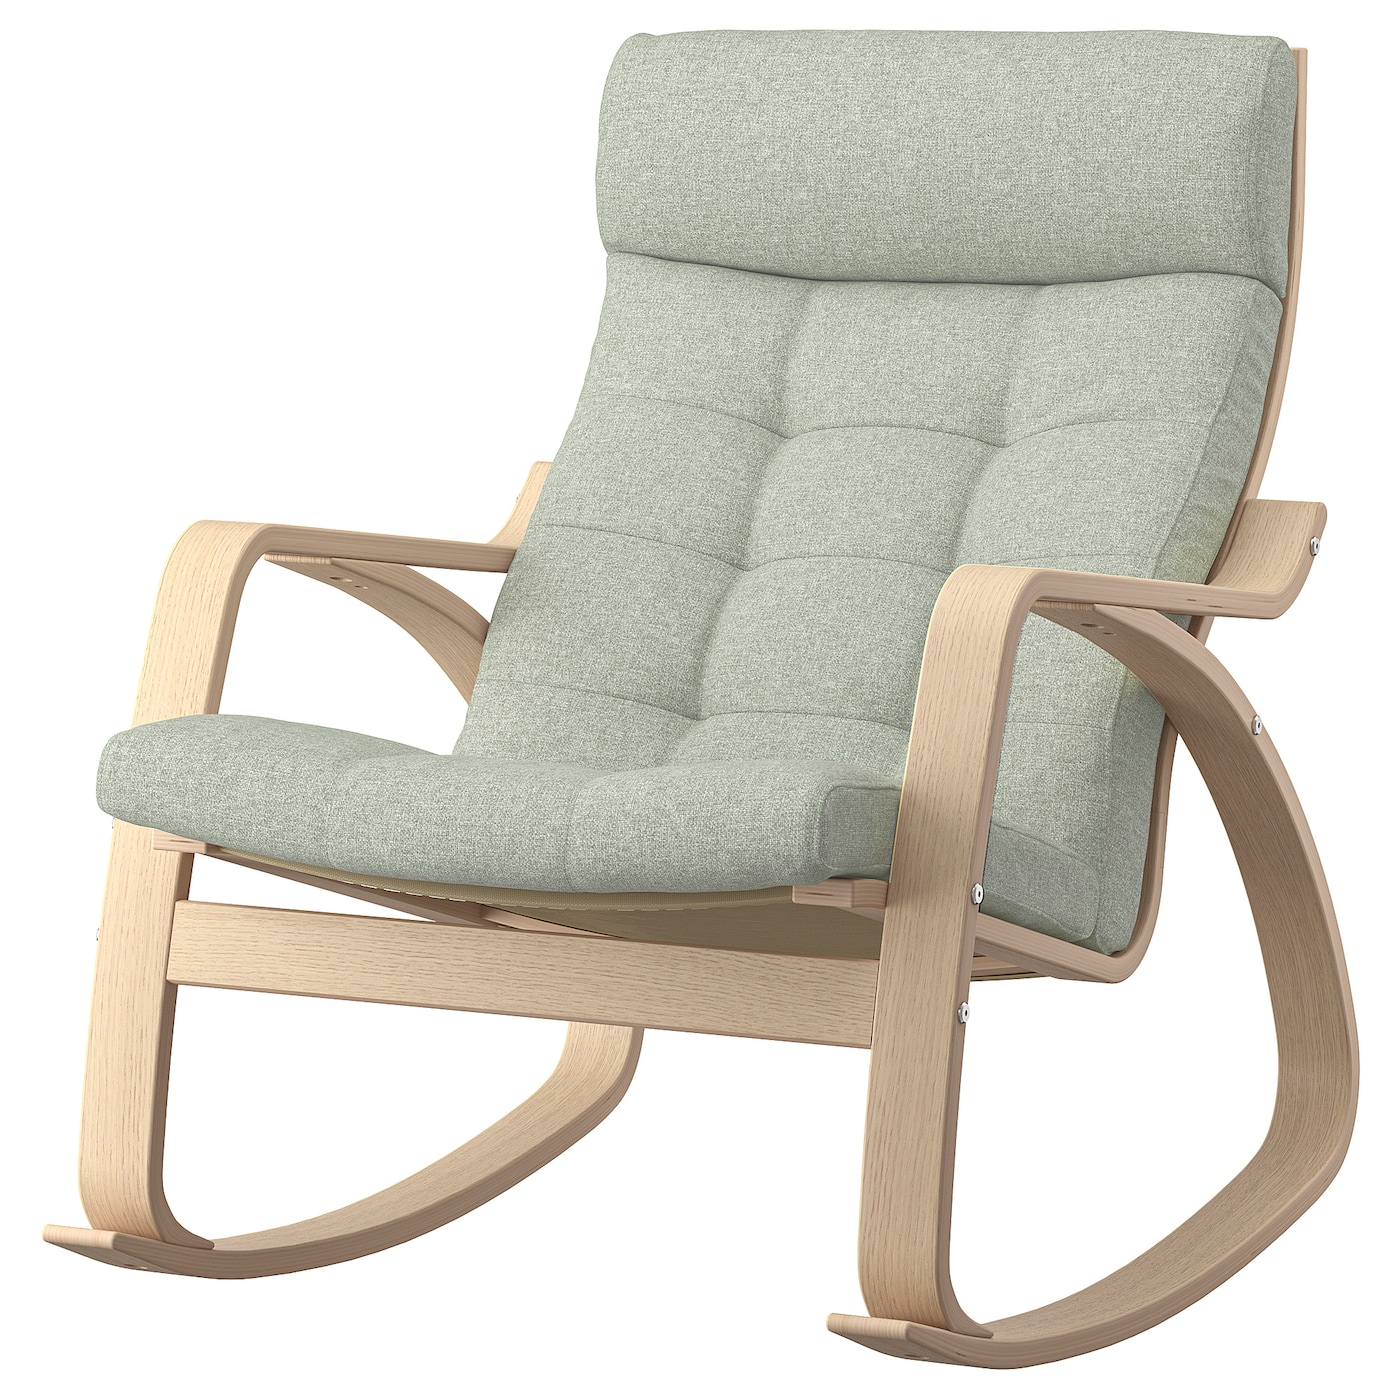 ПОЭНГ Кресло-качалка, дубовый шпон светлый/Гуннаред светло-зеленый POÄNG IKEA детское электрическое кресло качалка удобное кресло качалка бесплатная установка